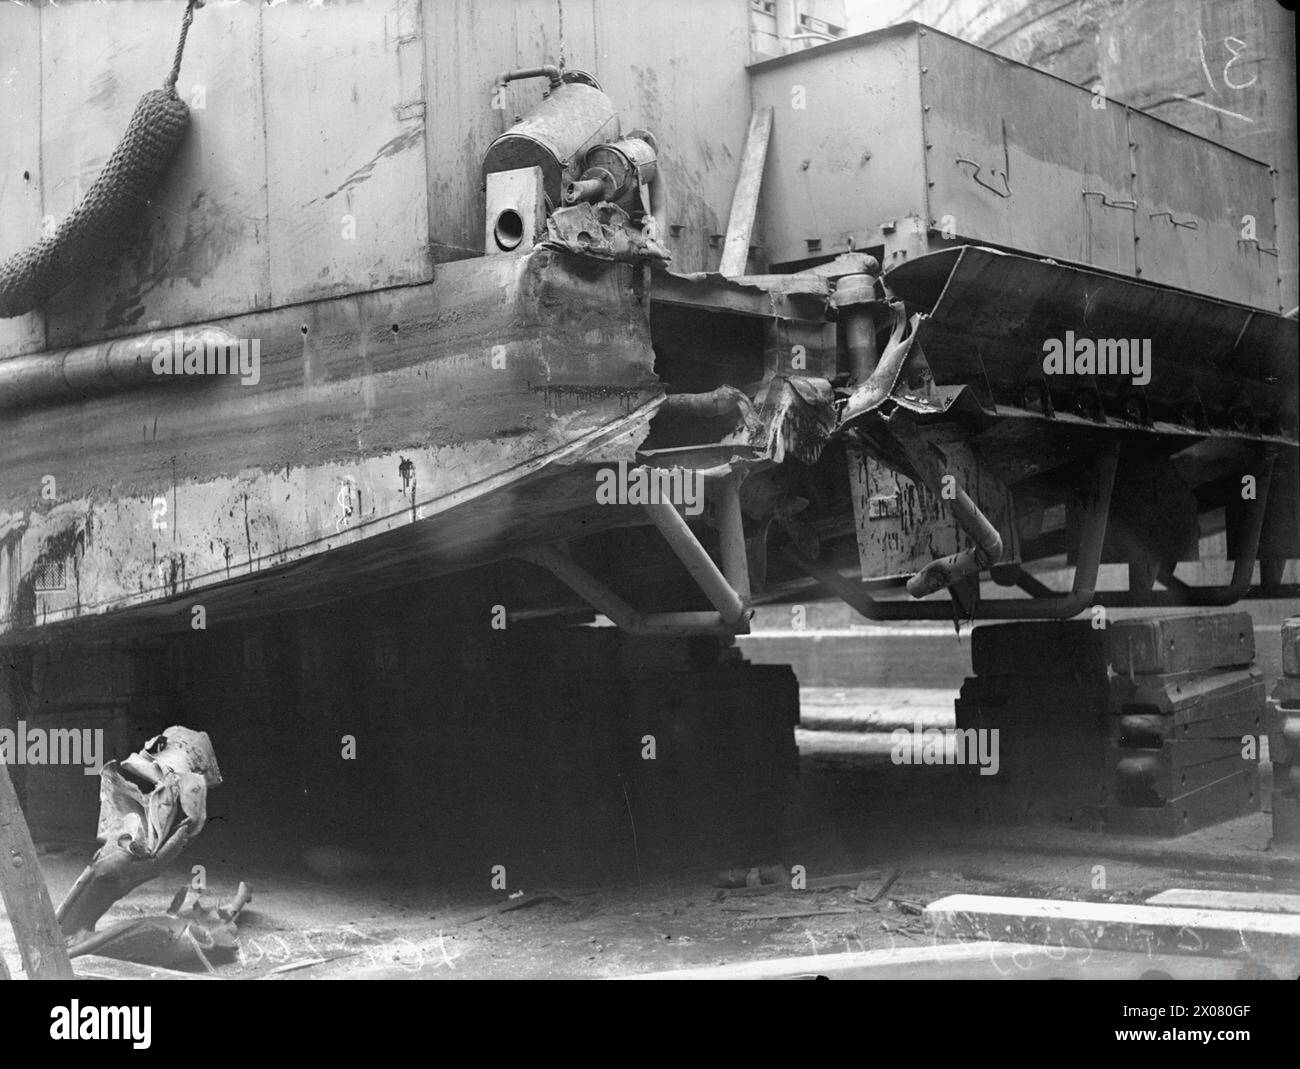 DOMMAGES AU LCT 2649. 22 AVRIL 1944, LANGTON DOCK, LIVERPOOL. - Dommages à la poupe bâbord Banque D'Images